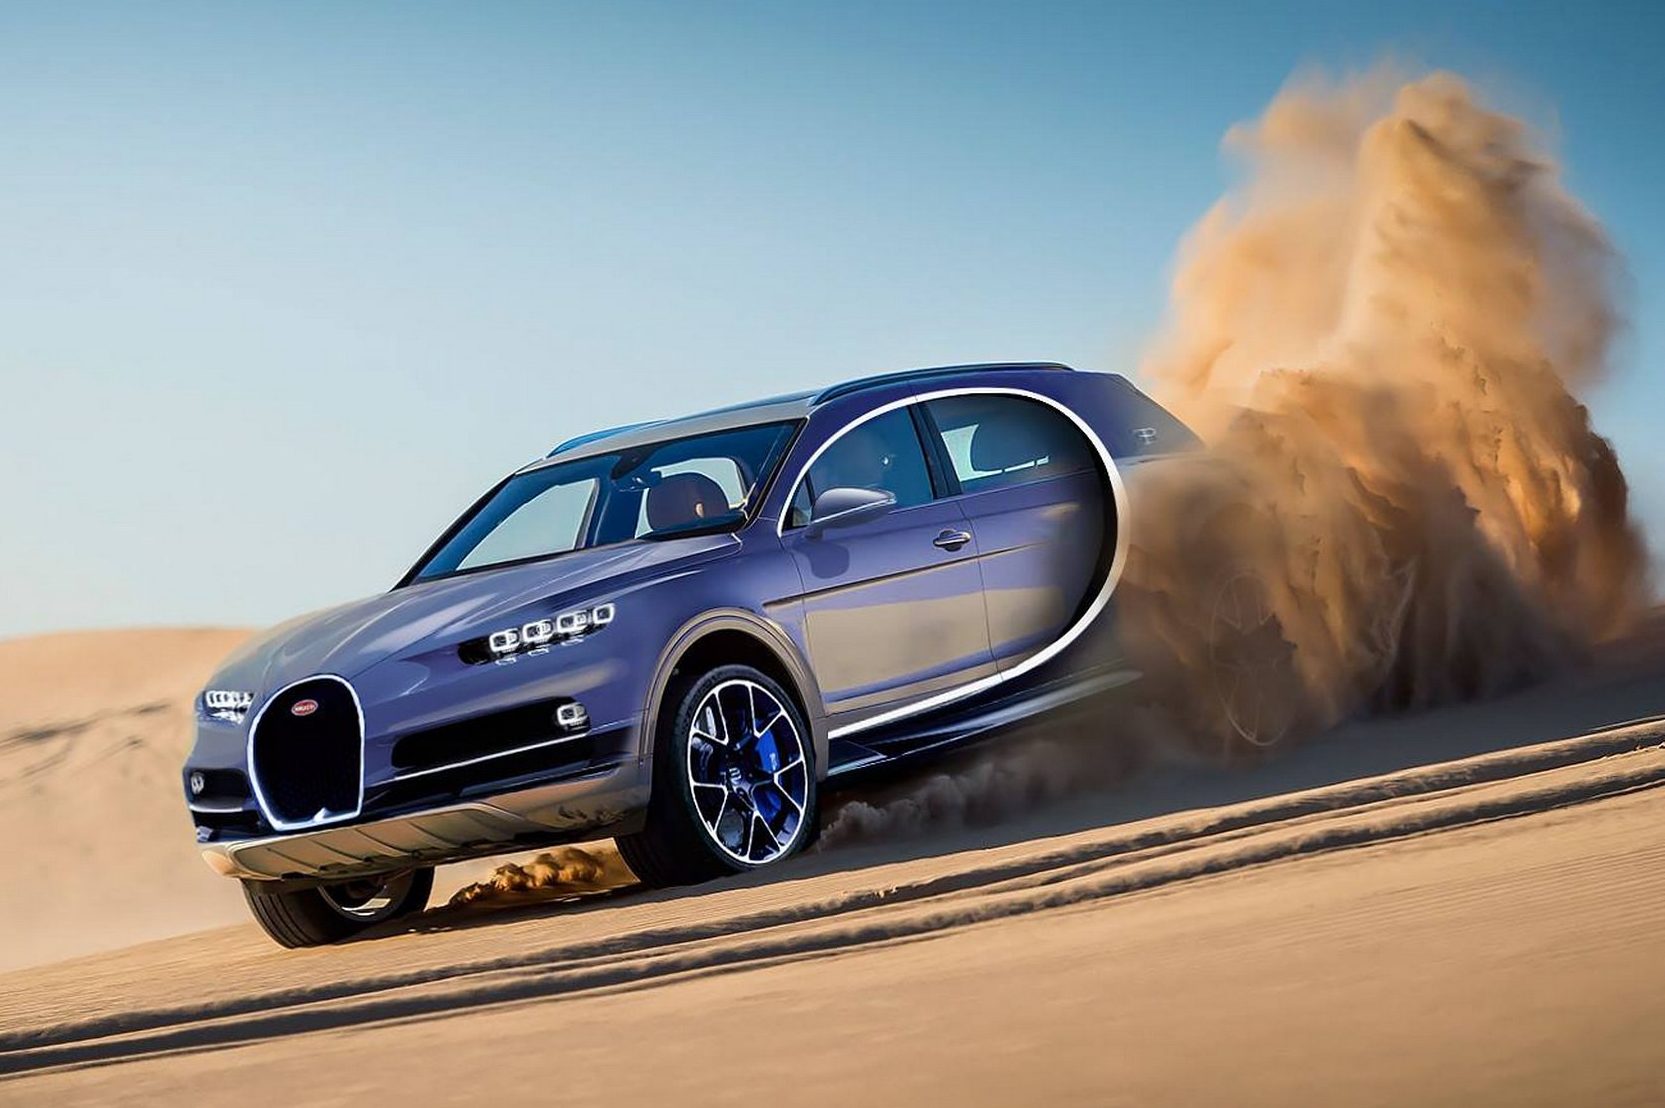 Bugatti pretende produzir SUV de alto desempenho Quatro Rodas